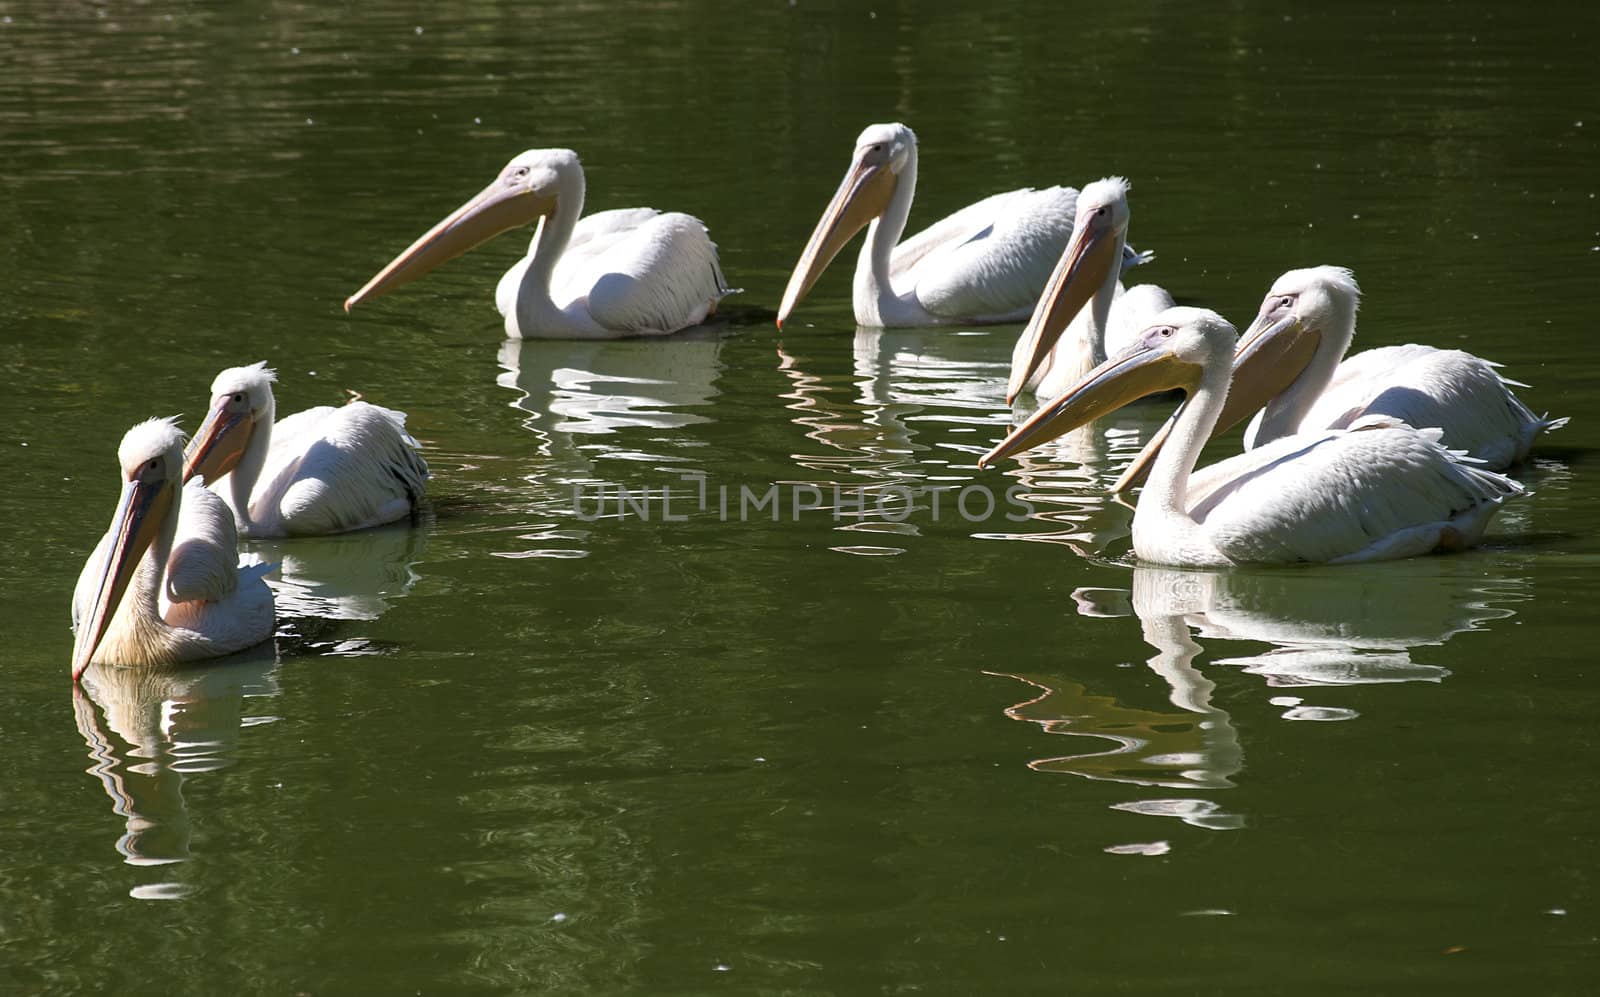 Pelican covey in lake waters by varbenov